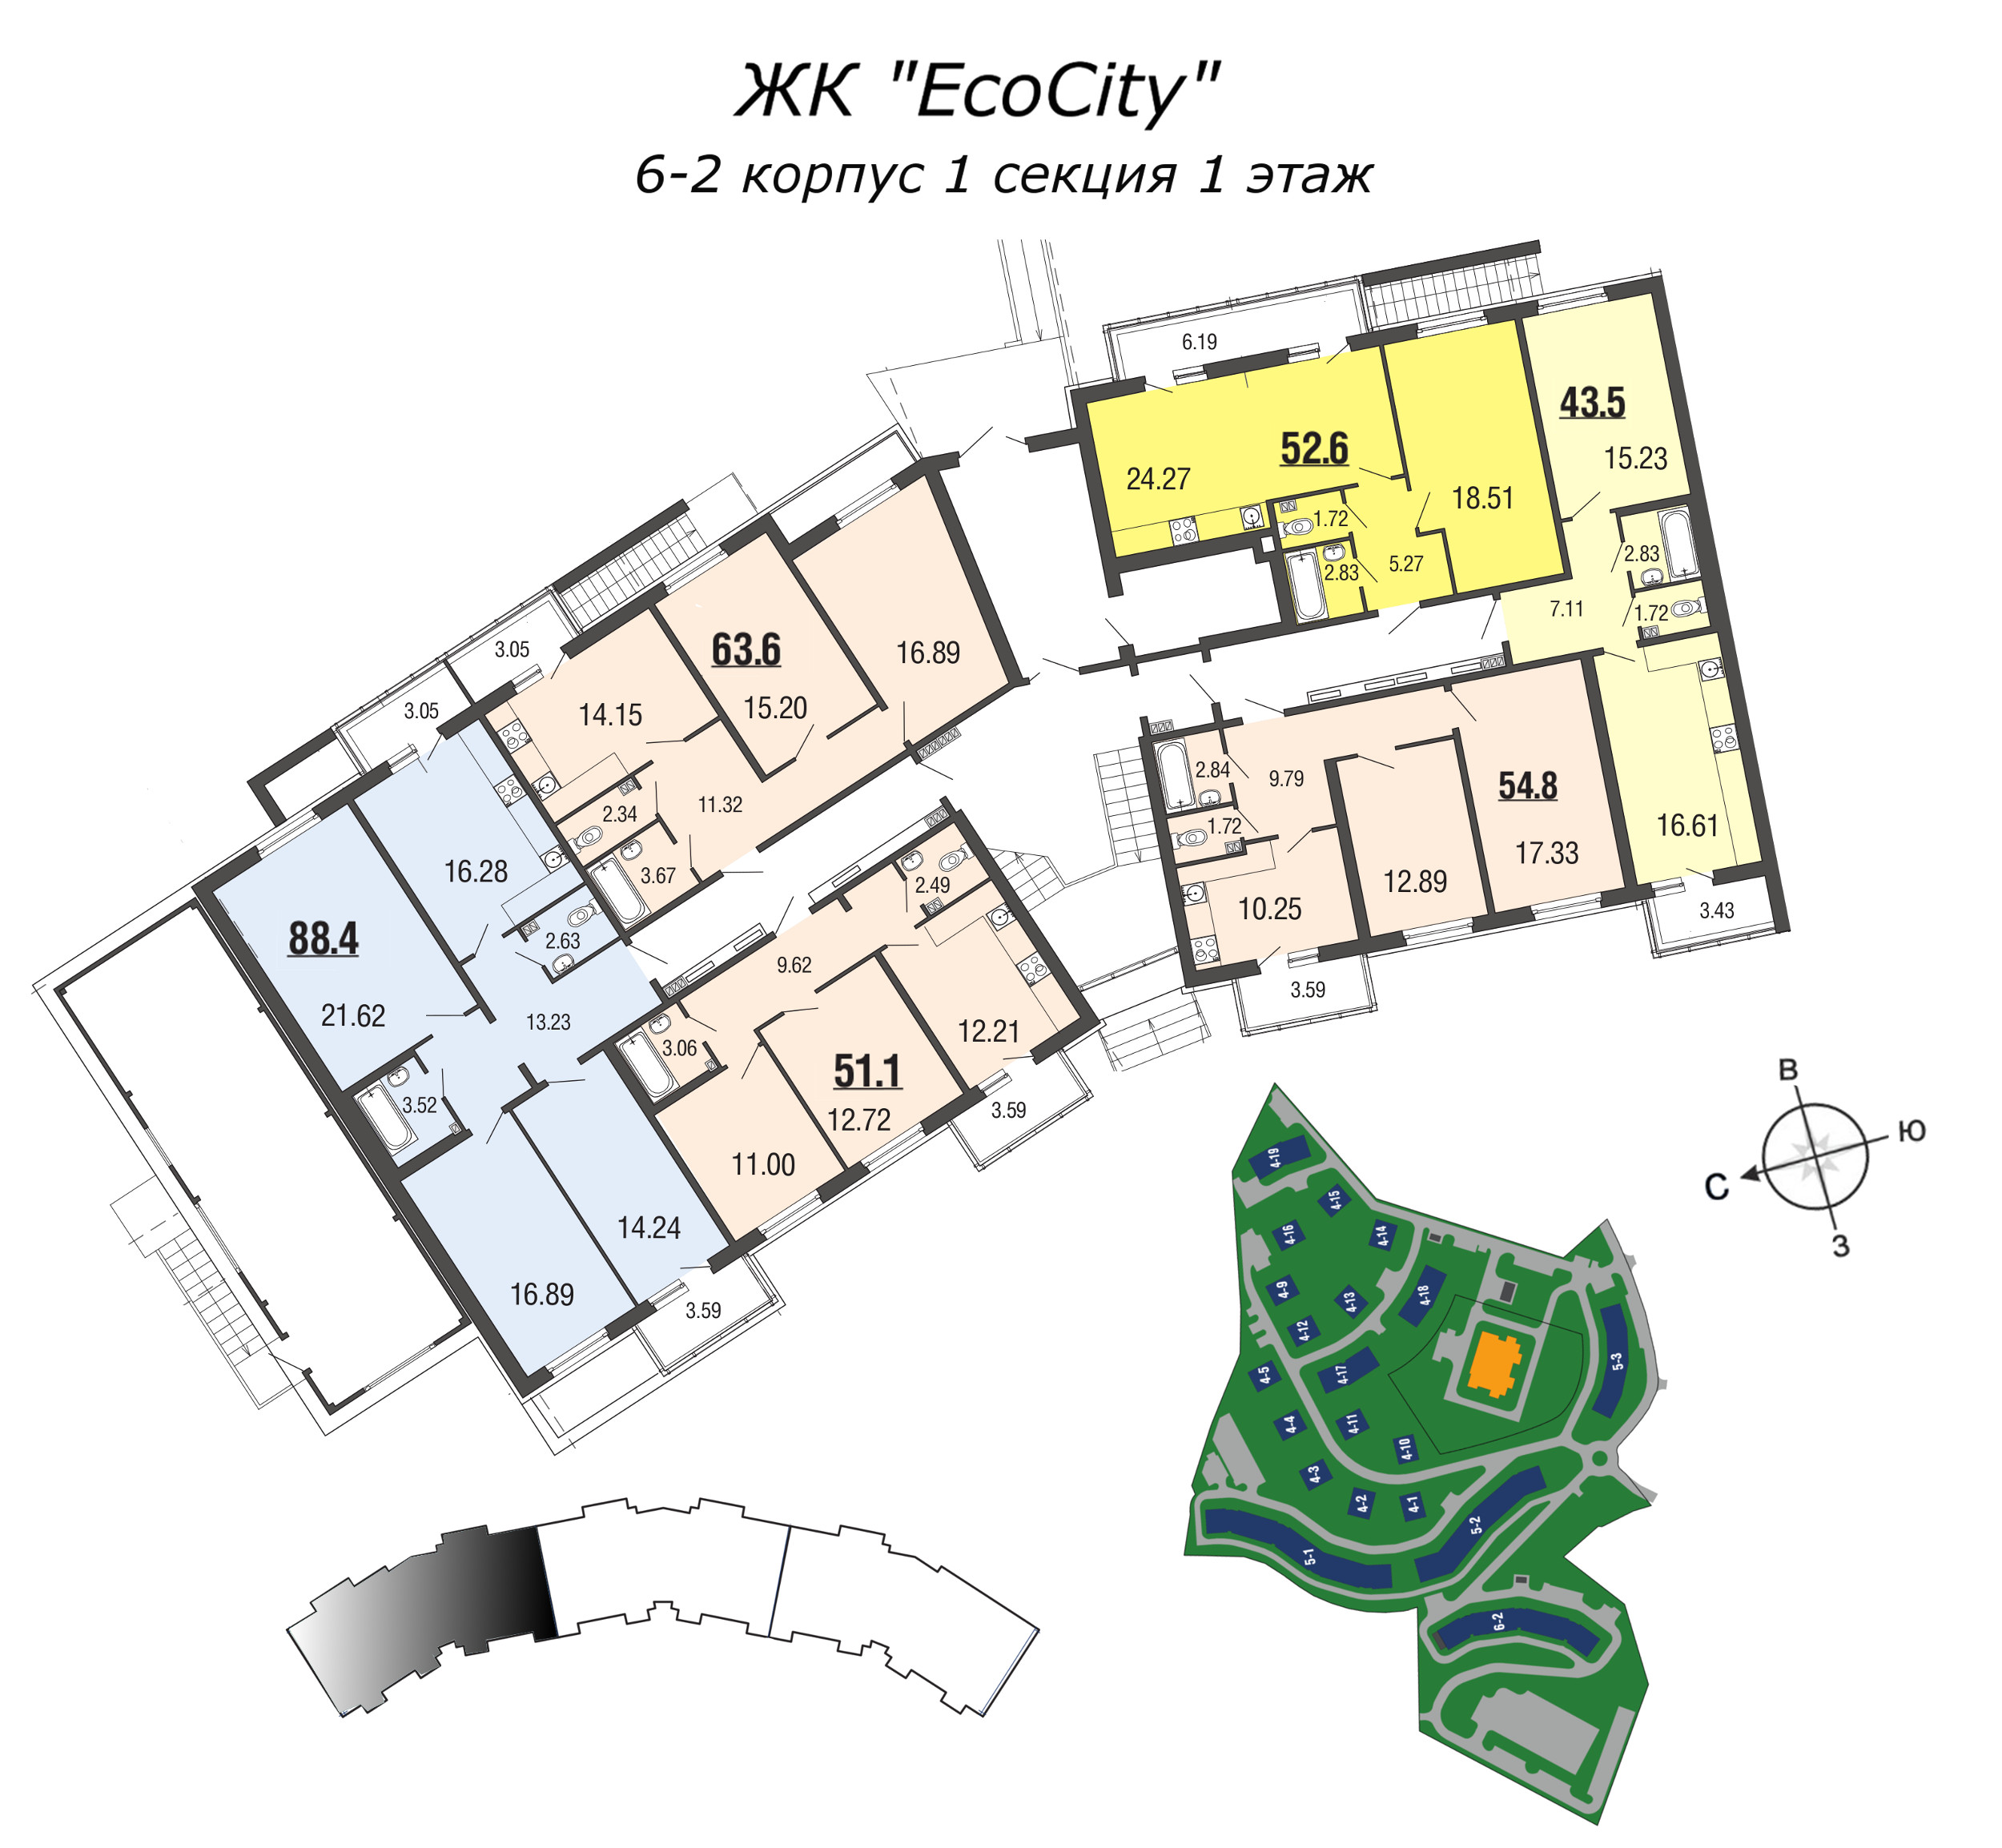 4-комнатная (Евро) квартира, 88.4 м² в ЖК "EcoCity" - планировка этажа